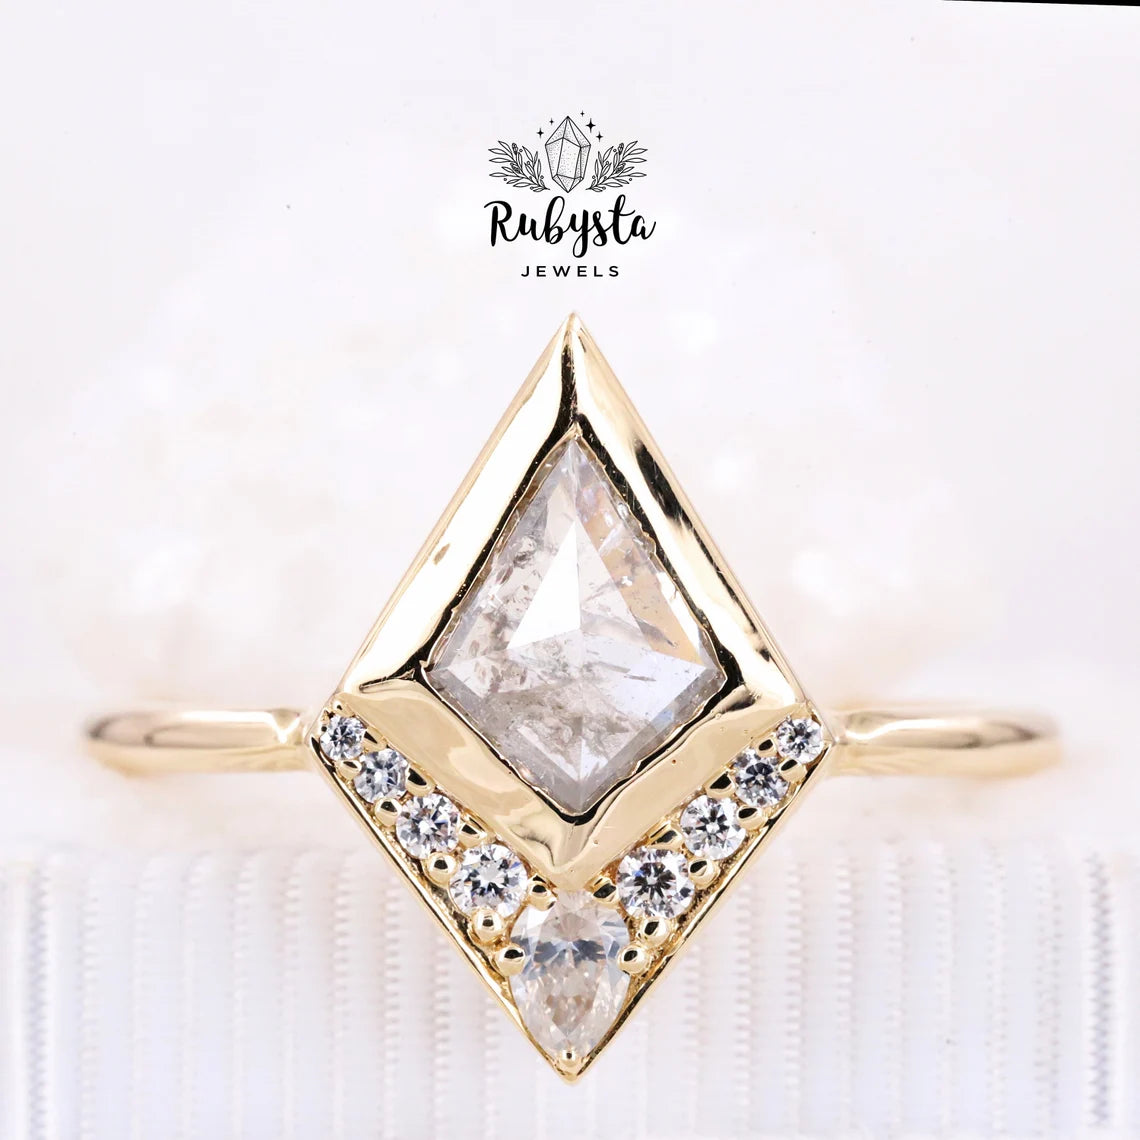 Salt and Pepper Diamond Ring | Kite Diamond Ring